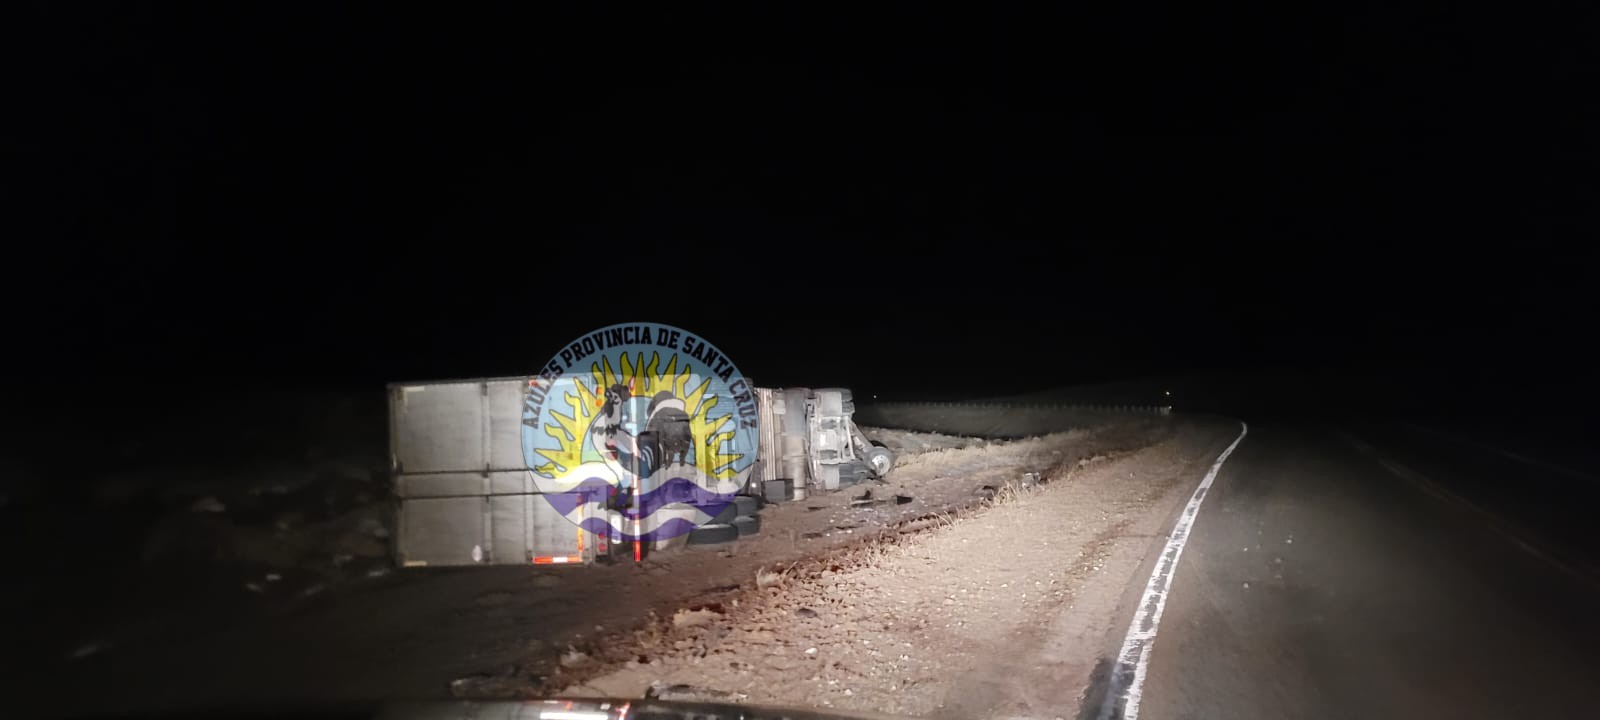 Incidente en Ruta 40 Camión vuelca sin lesionados (2)